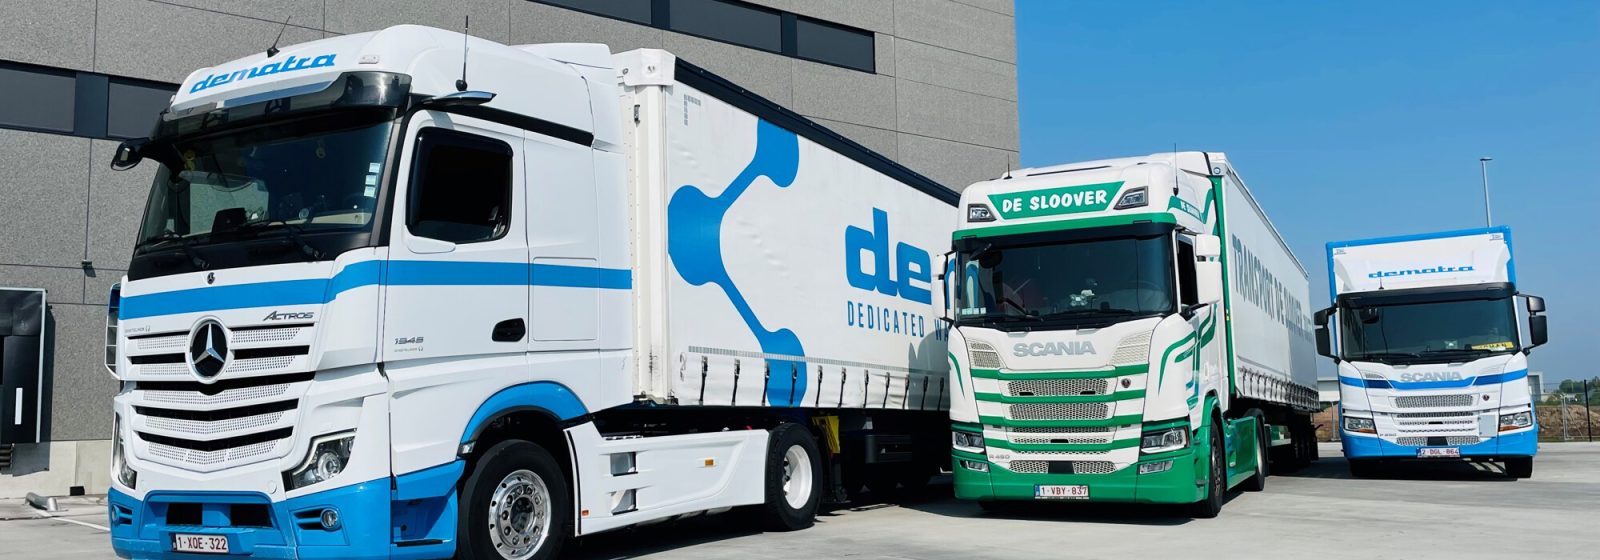 Overname De Sloover Transport door Dematra Group